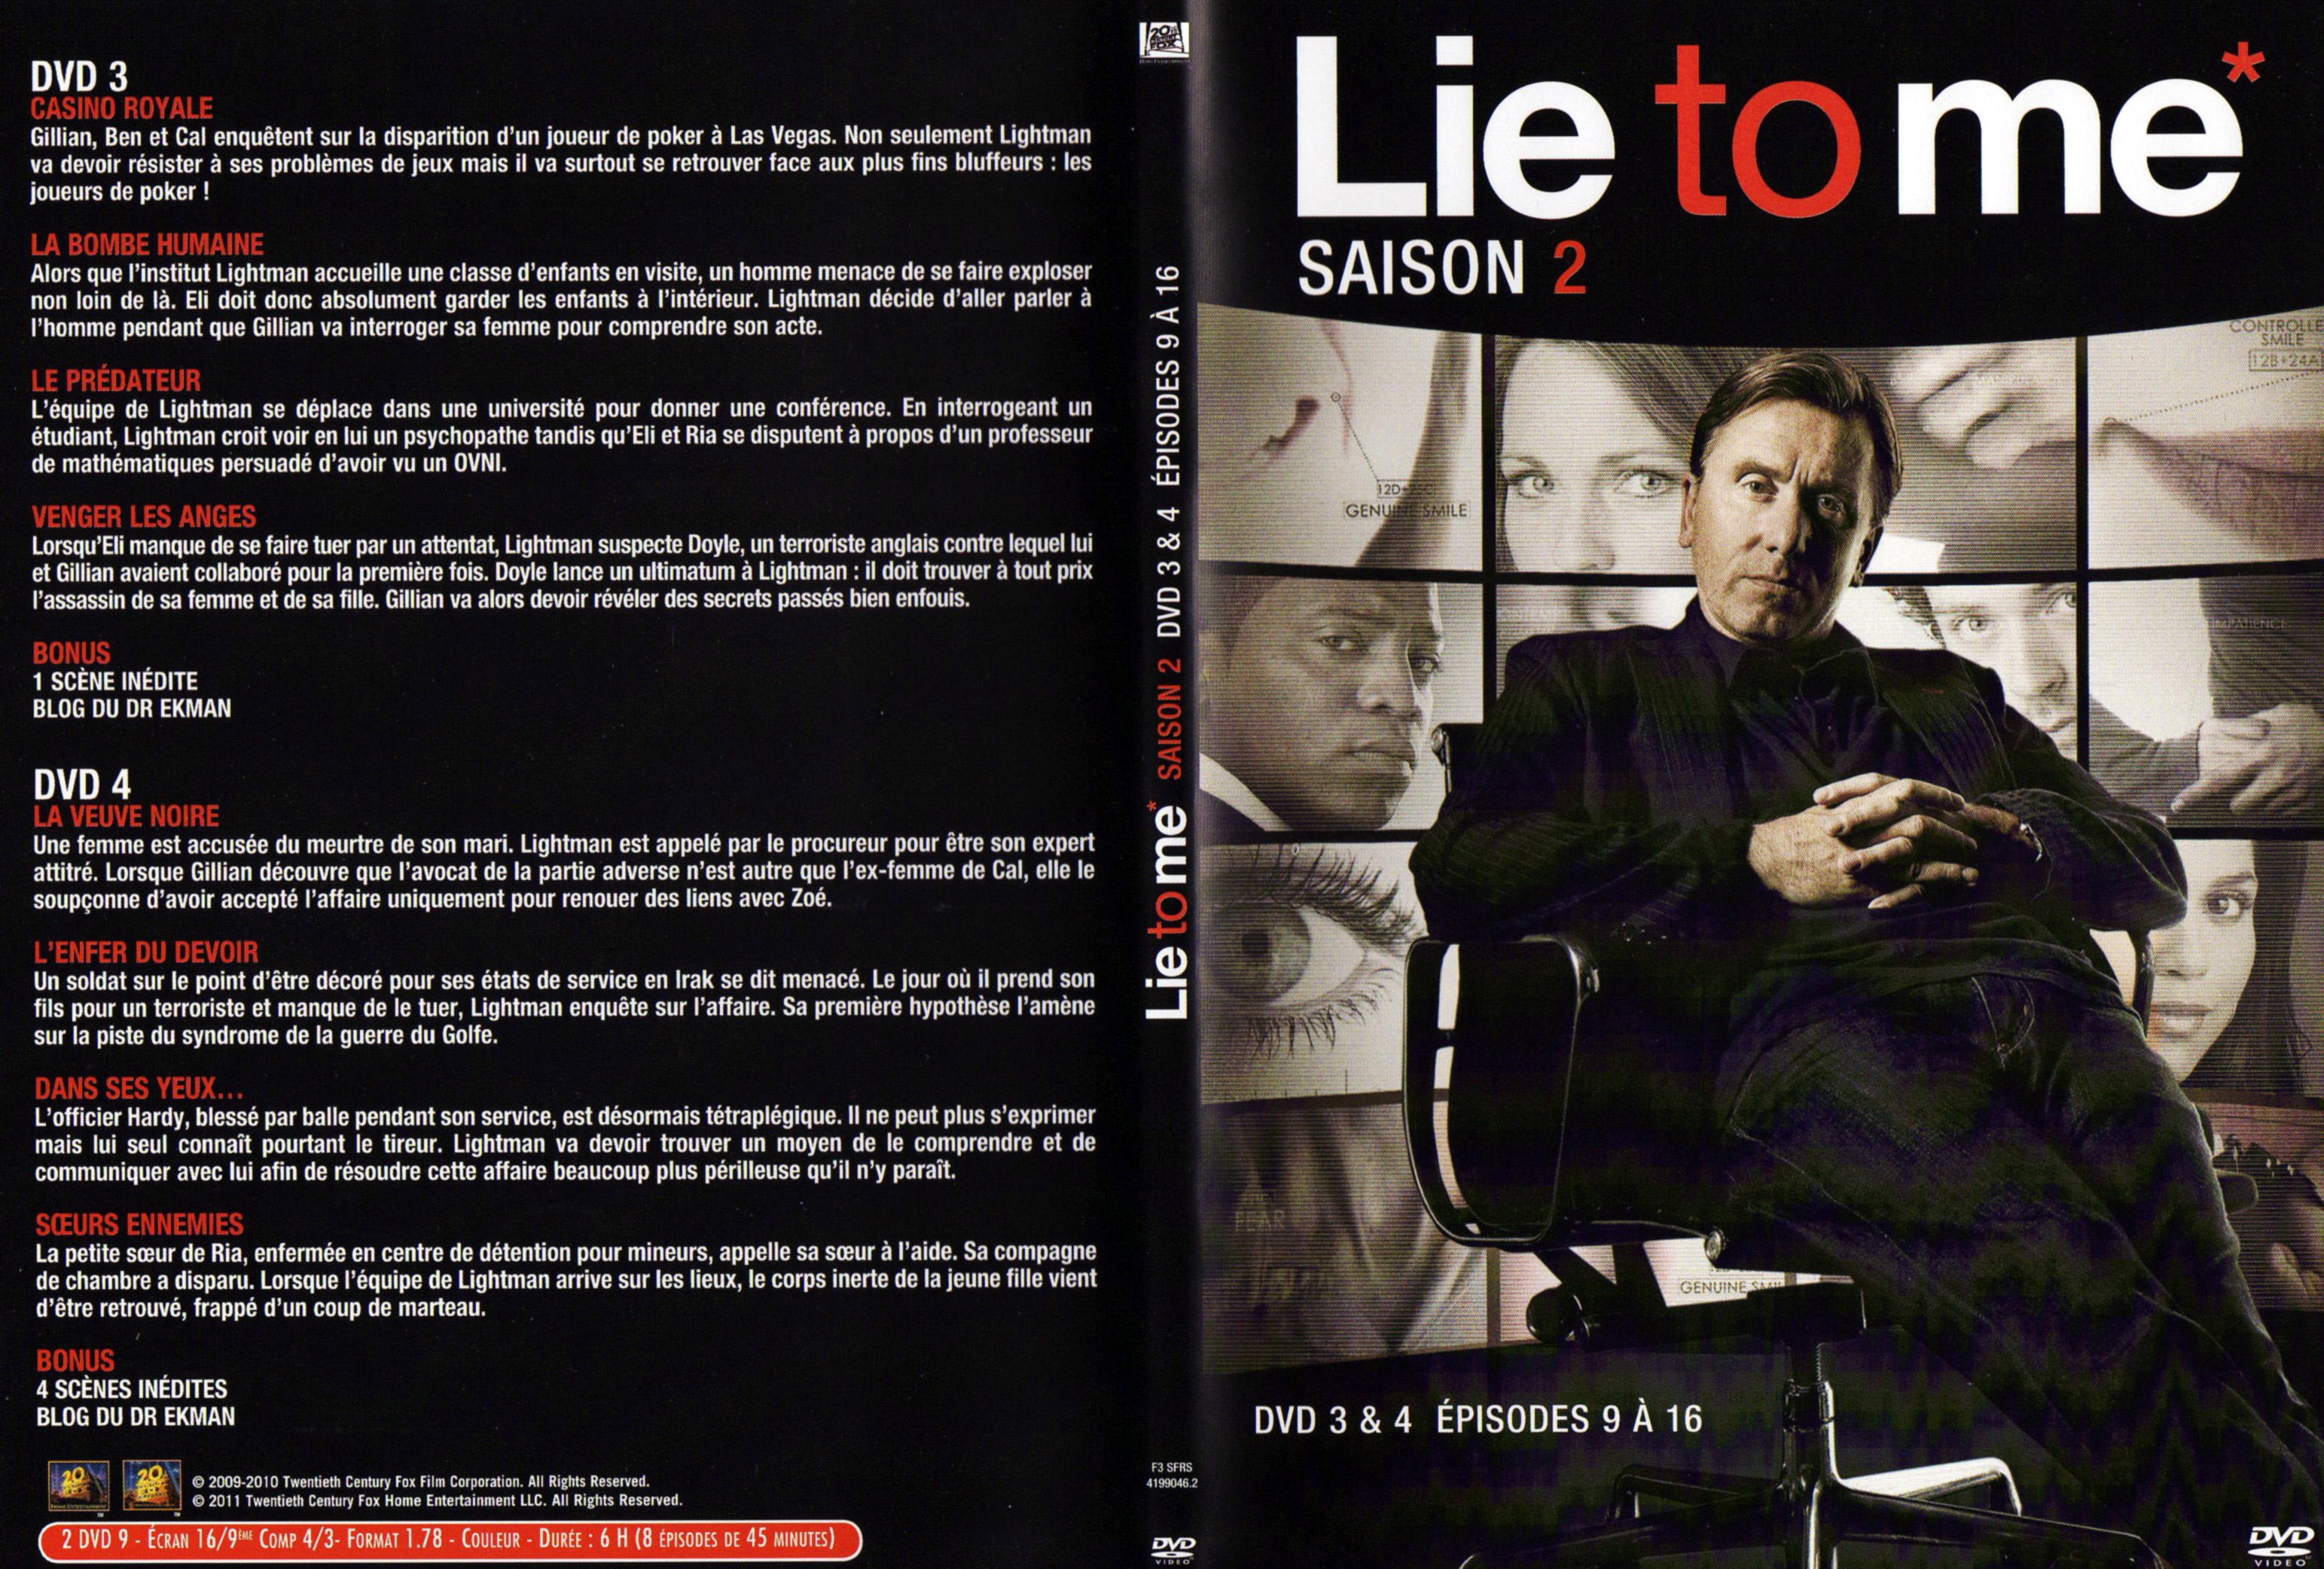 Jaquette DVD Lie to me Saison 2 DVD 2